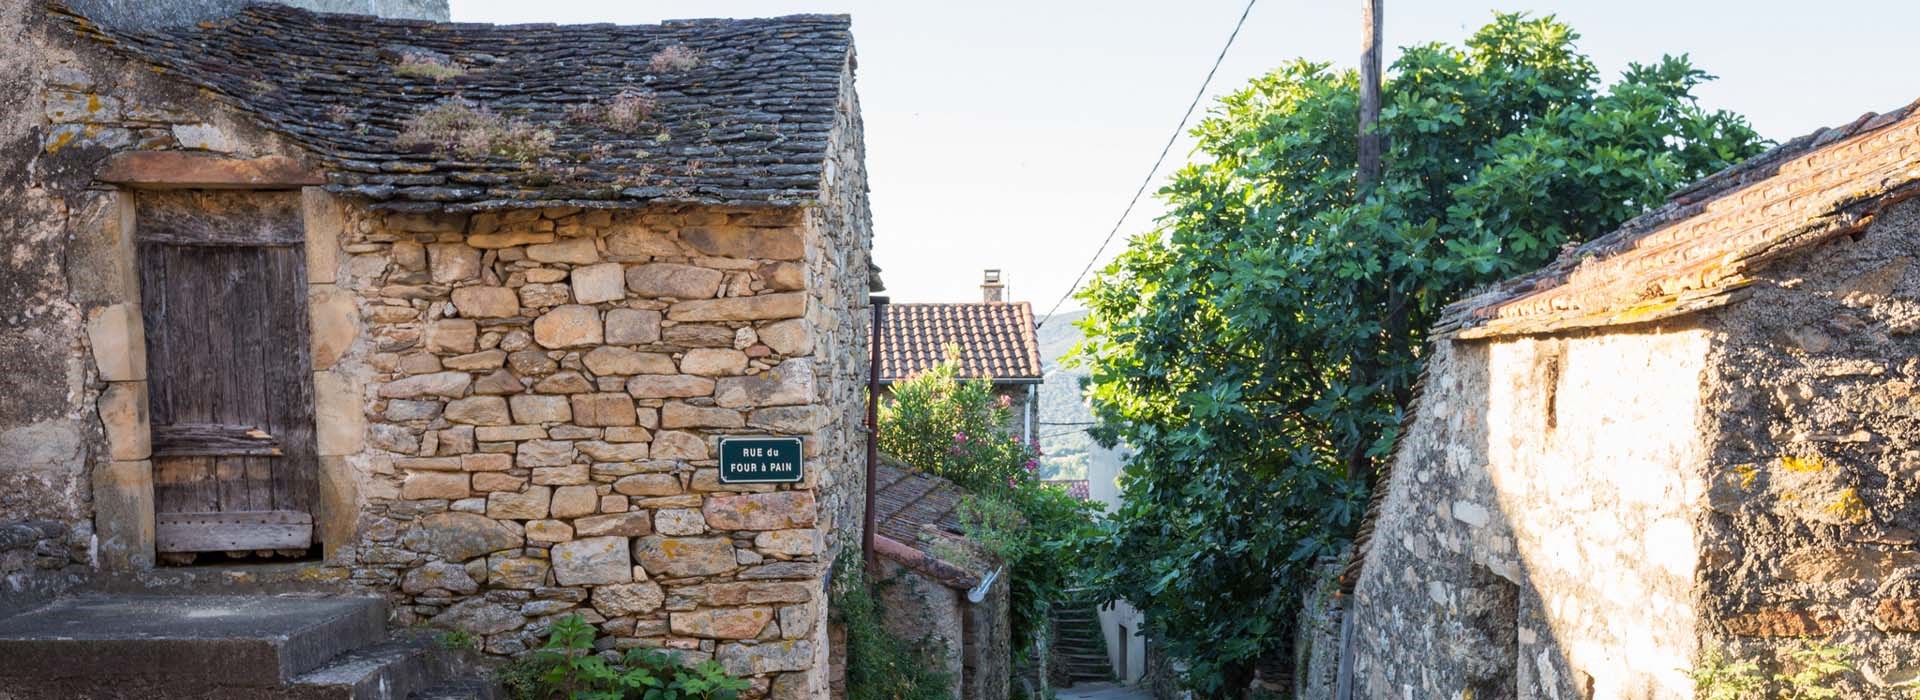 Visiter Le hameau d'Héric - Occitanie